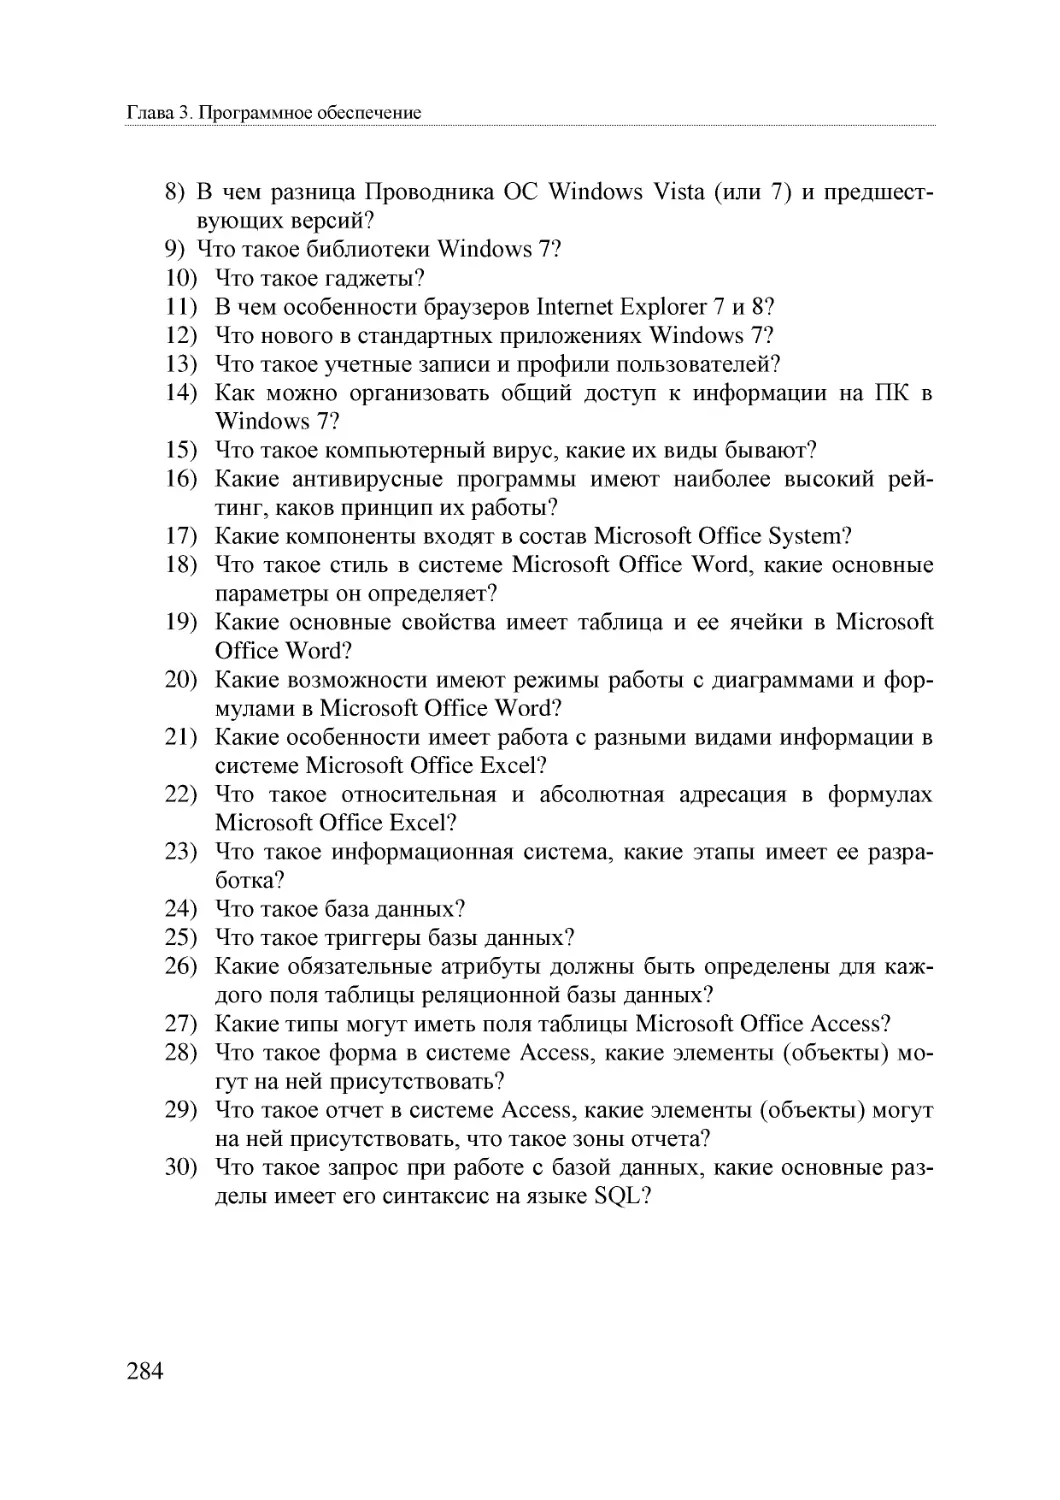 Informatika_Uchebnik_dlya_vuzov_2010 284